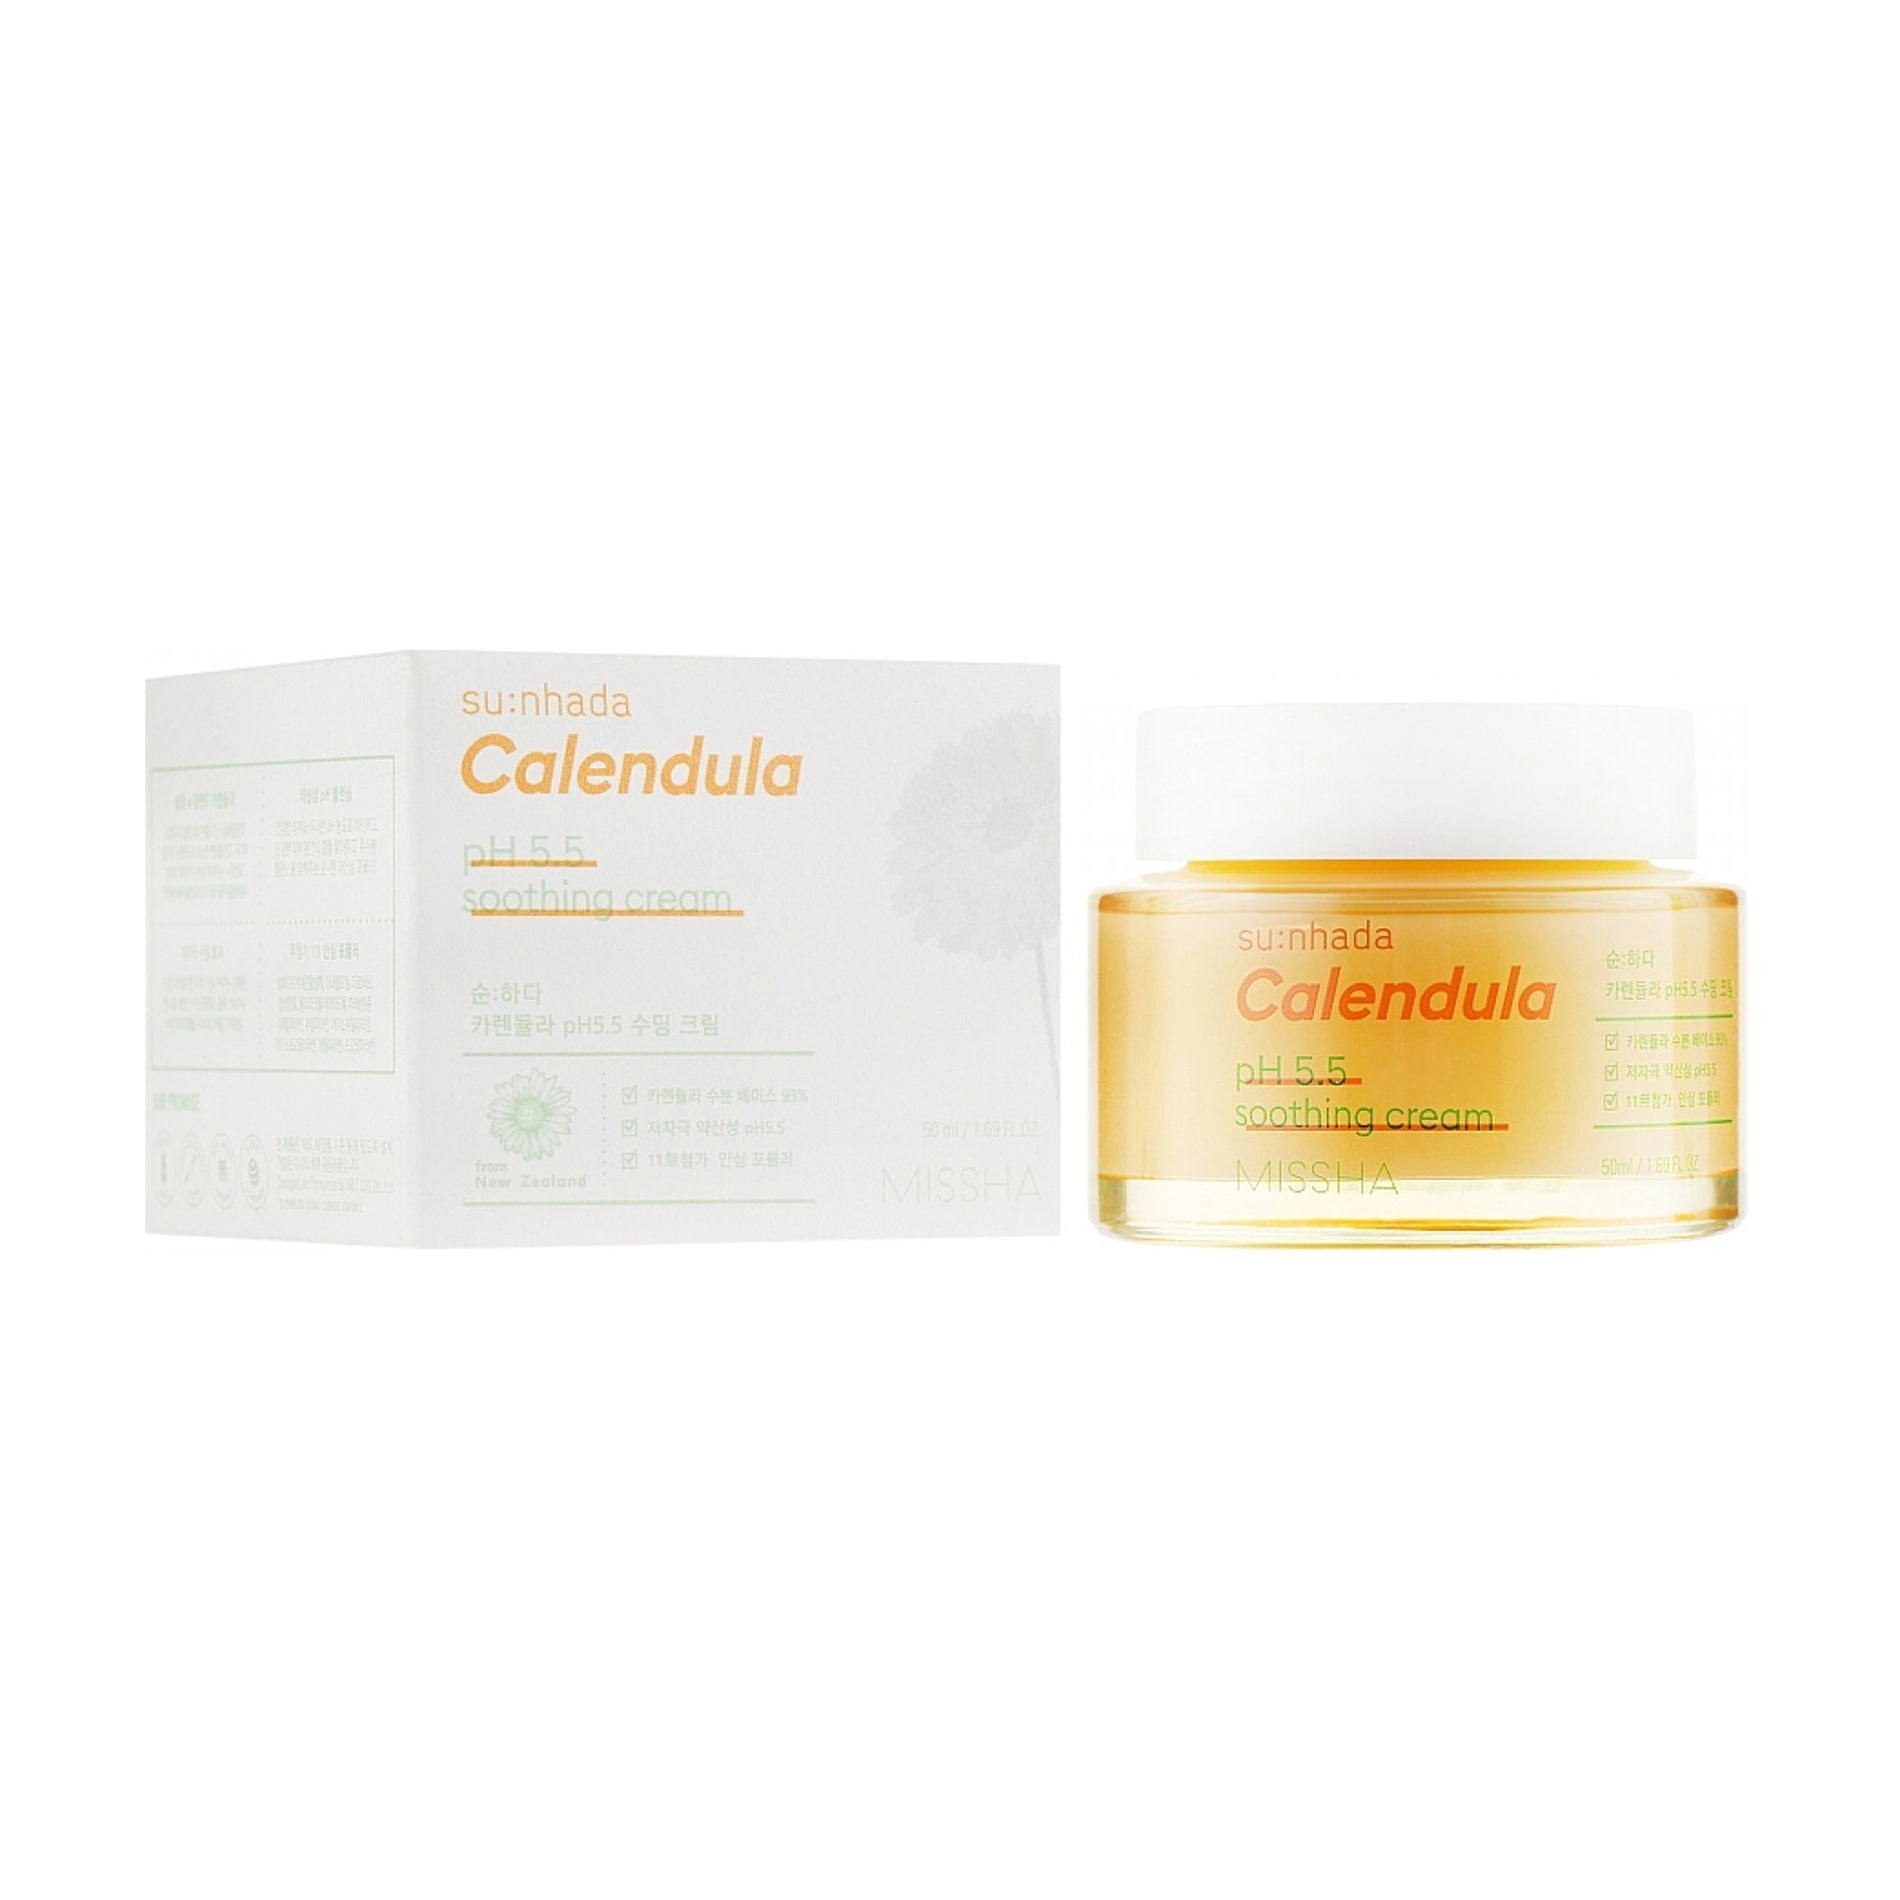 Missha Успокаивающий крем Su:Nhada Calendula pH 5.5 Soothing Cream для чувствительной кожи лица, 50 мл - фото N4